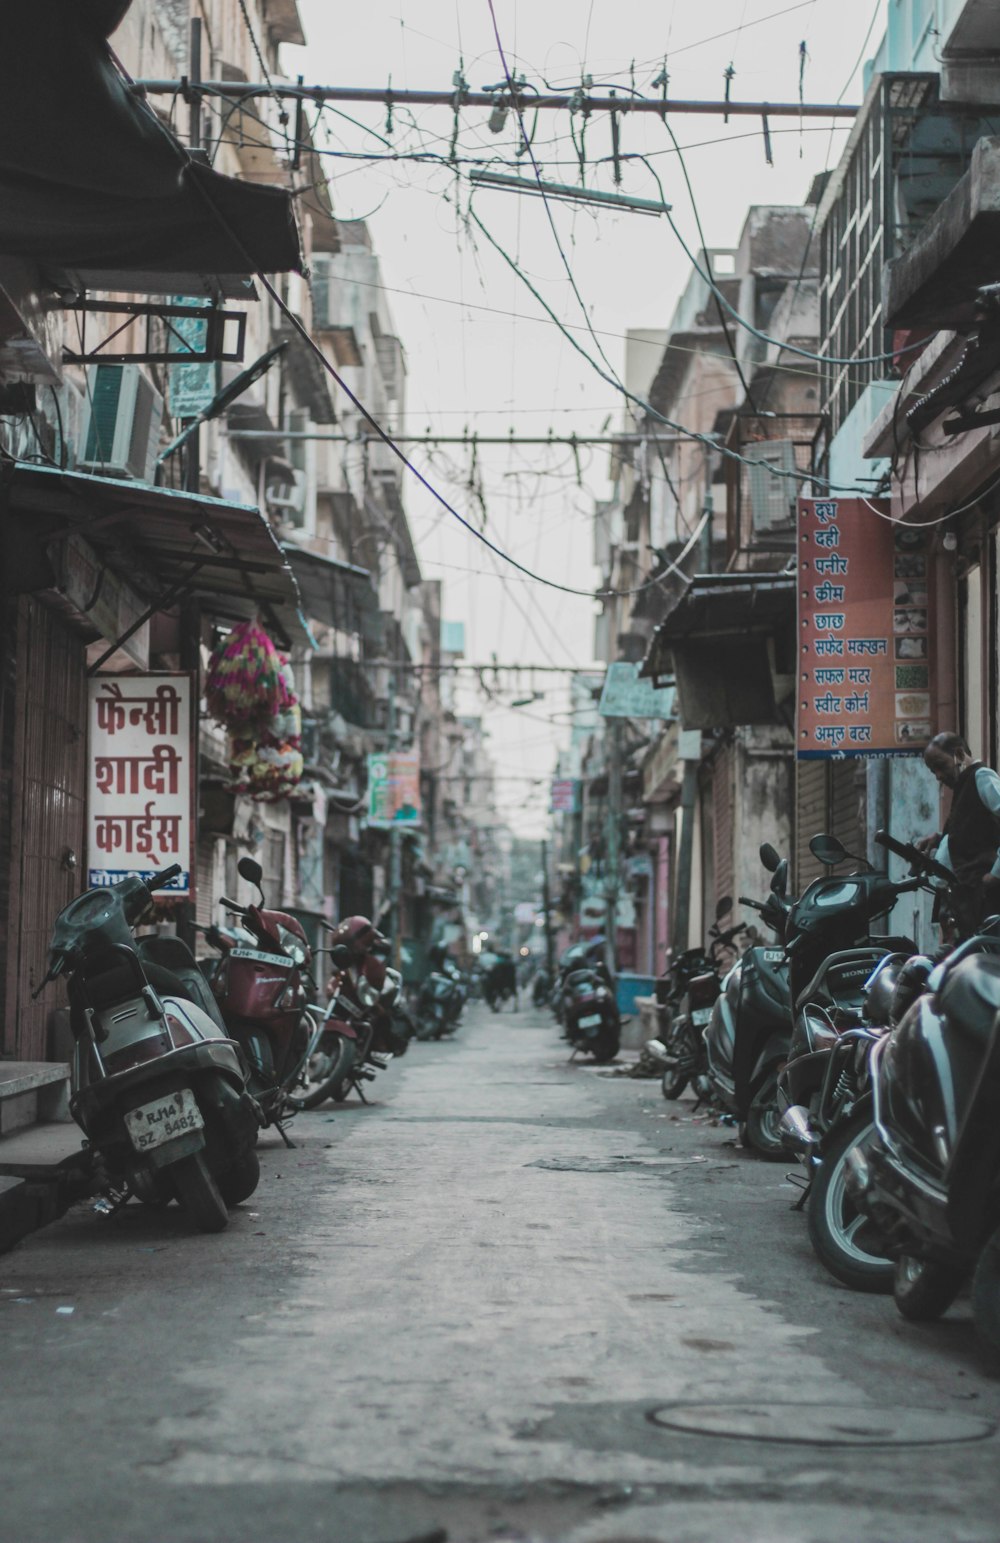 Motocicletas estacionadas en la calle durante el día